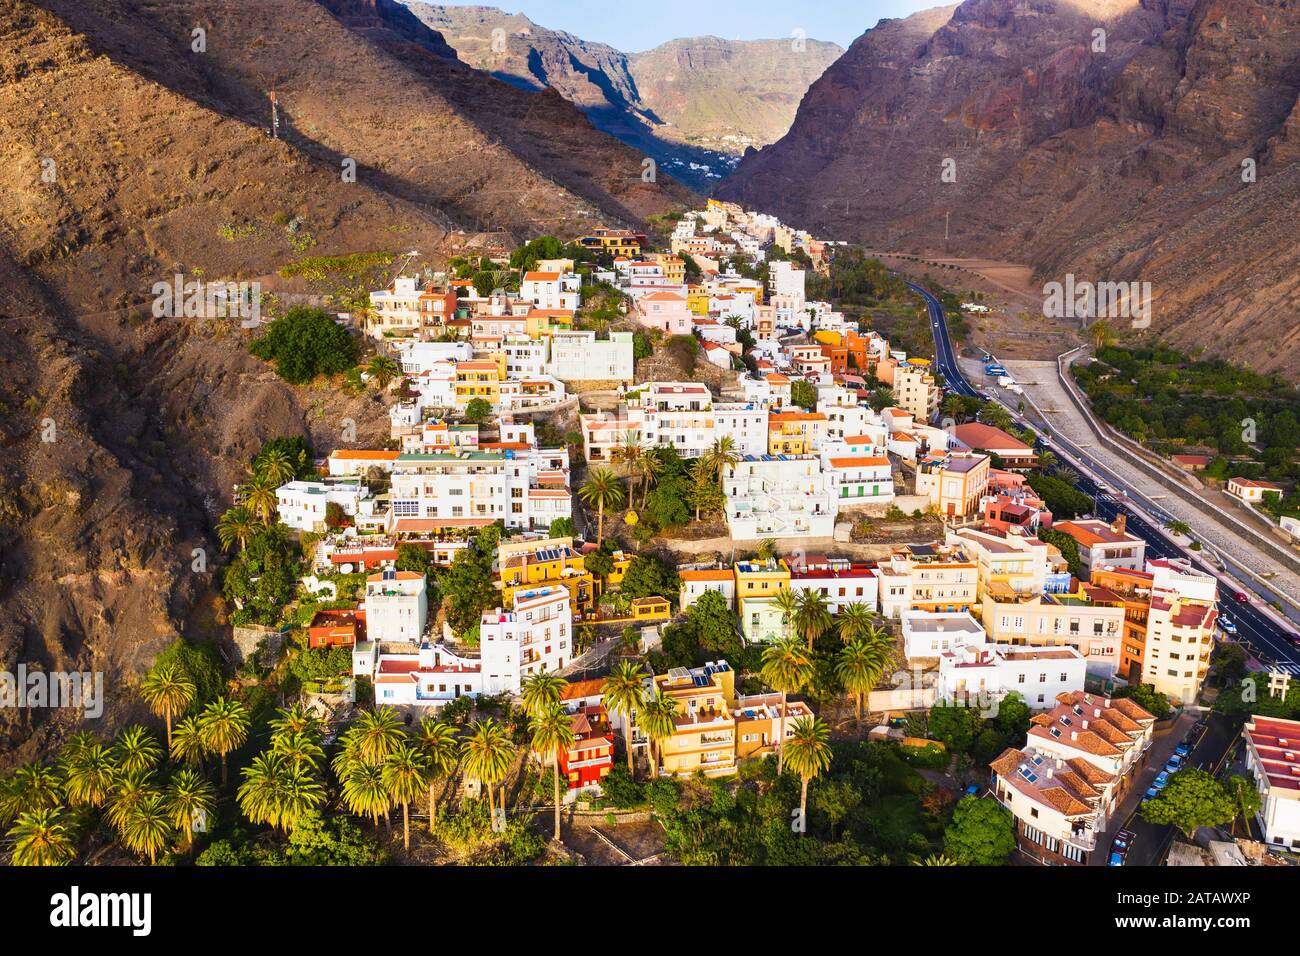 La Calera, Valle Gran Rey, aerial view, La Gomera, Canary Islands, Spain Stock Photo